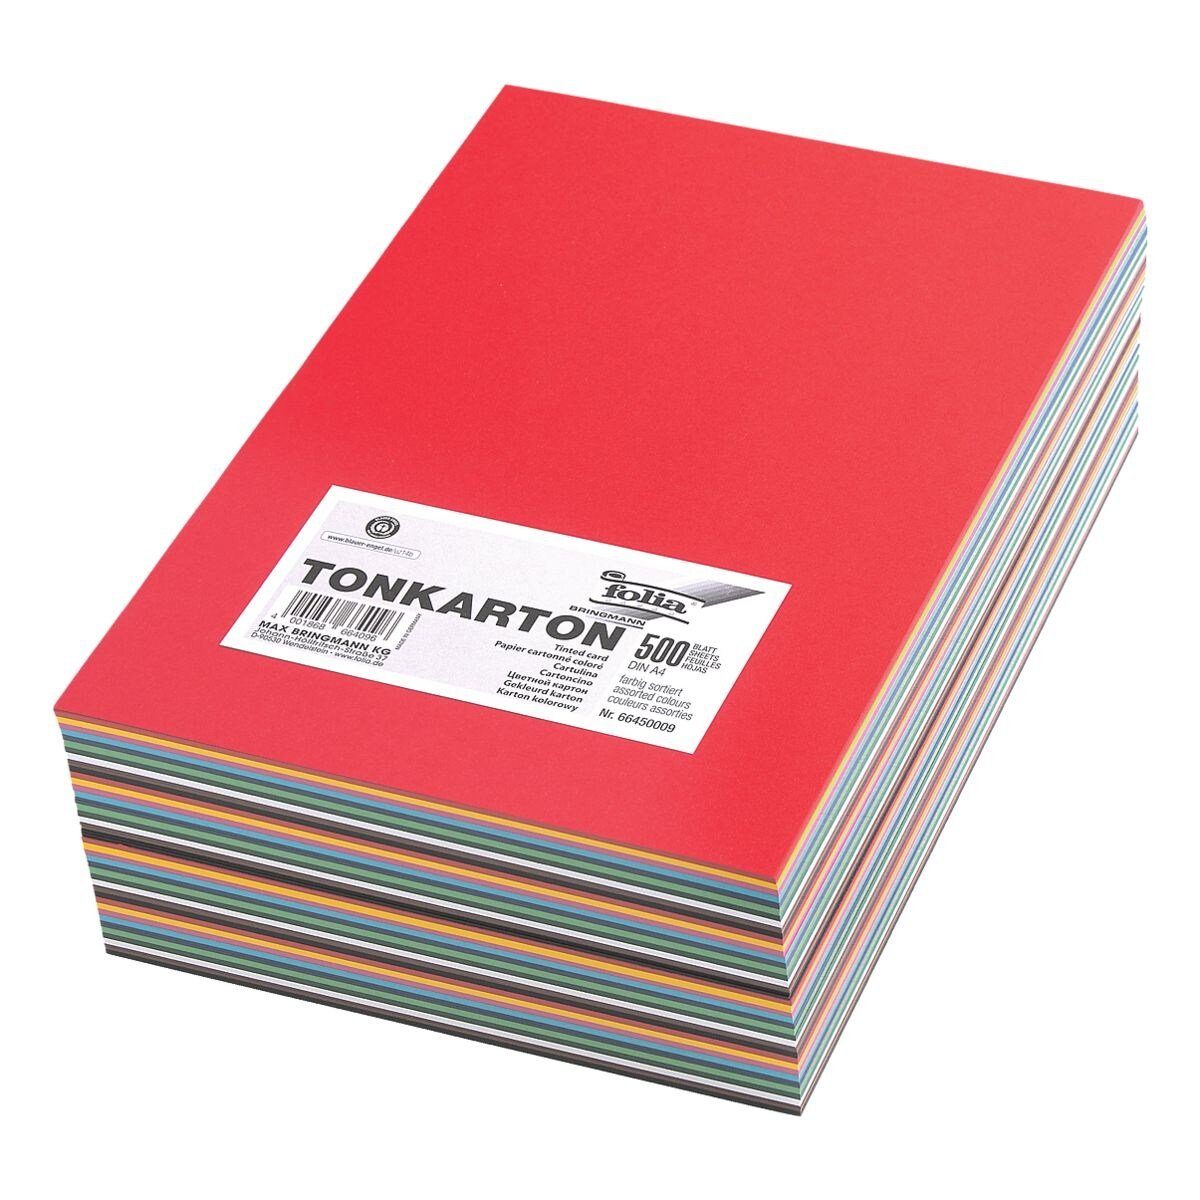 Folia Bastelkartonpapier, Tonkarton in 10 Farben, Format DIN A4, 160 g/m², 500 Blatt | Papier